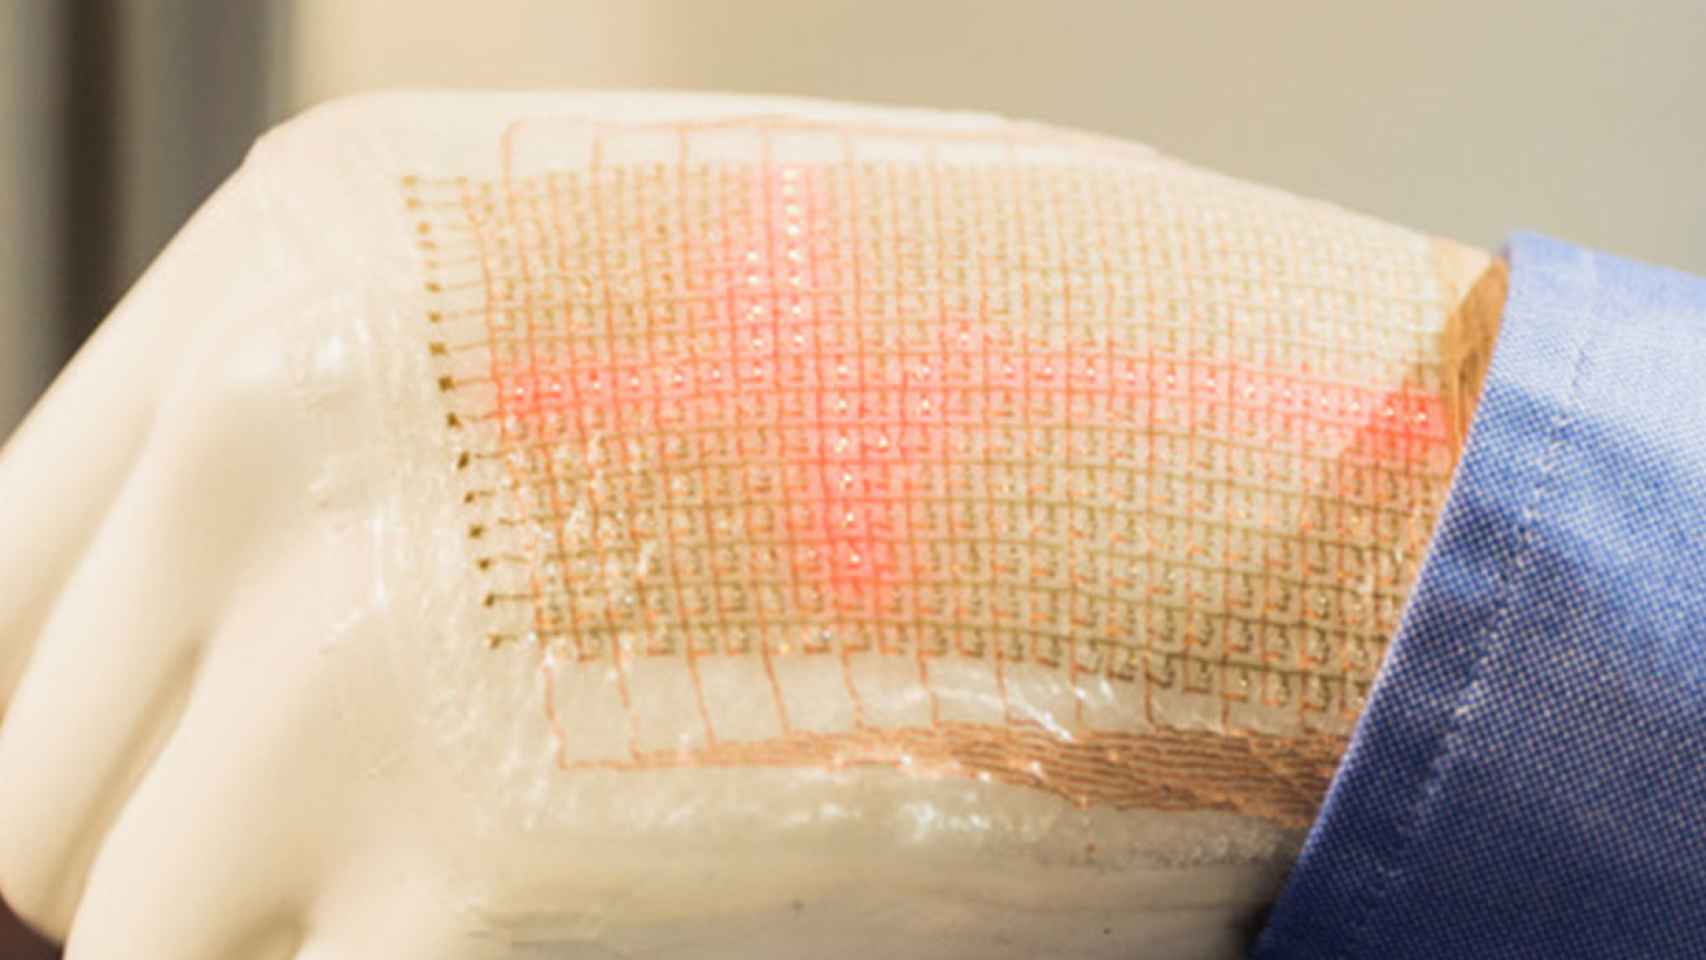 Un LED que cura las heridas crónicas con su luz antibacteriana.